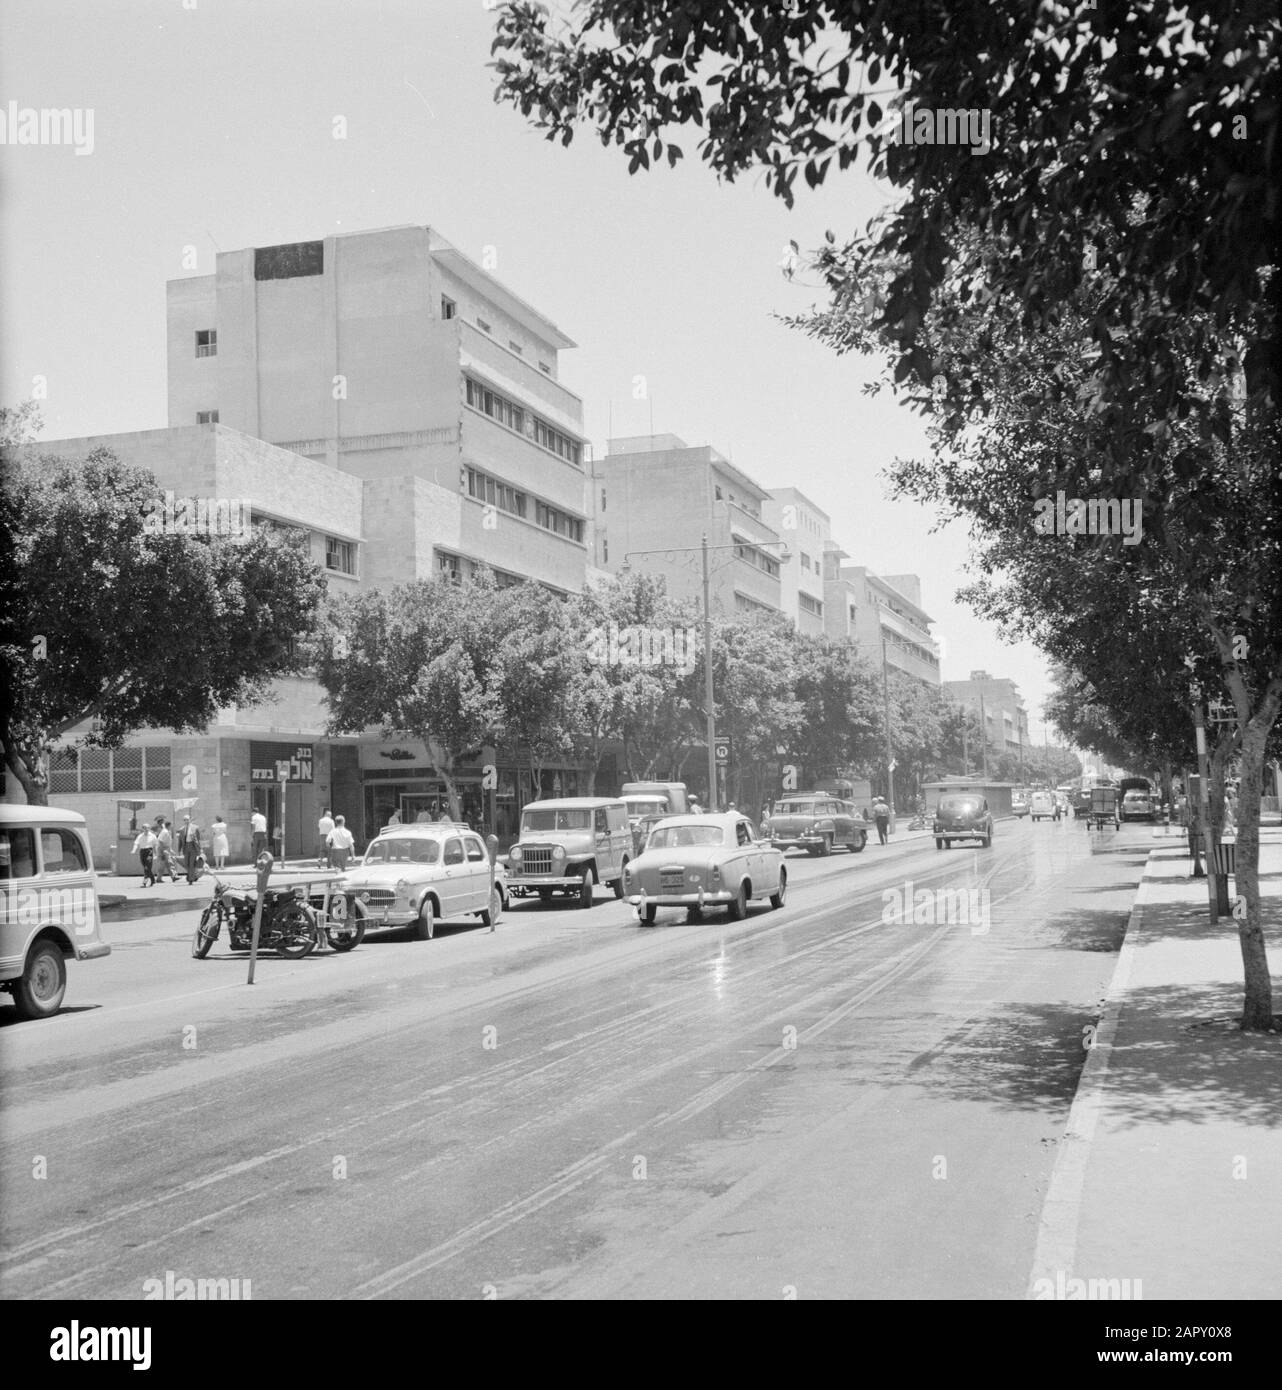 Israël 1964-1965: Haifa, sculptures de rue route avec circulation urbaine, des deux côtés une rangée d'arbres et des blocs d'appartements de gauche Date: 1964 lieu: Haifa, Israël mots clés: Voitures, arbres, oldtimers, sculpteurs de rue, feux de rue, piétons, routes Banque D'Images